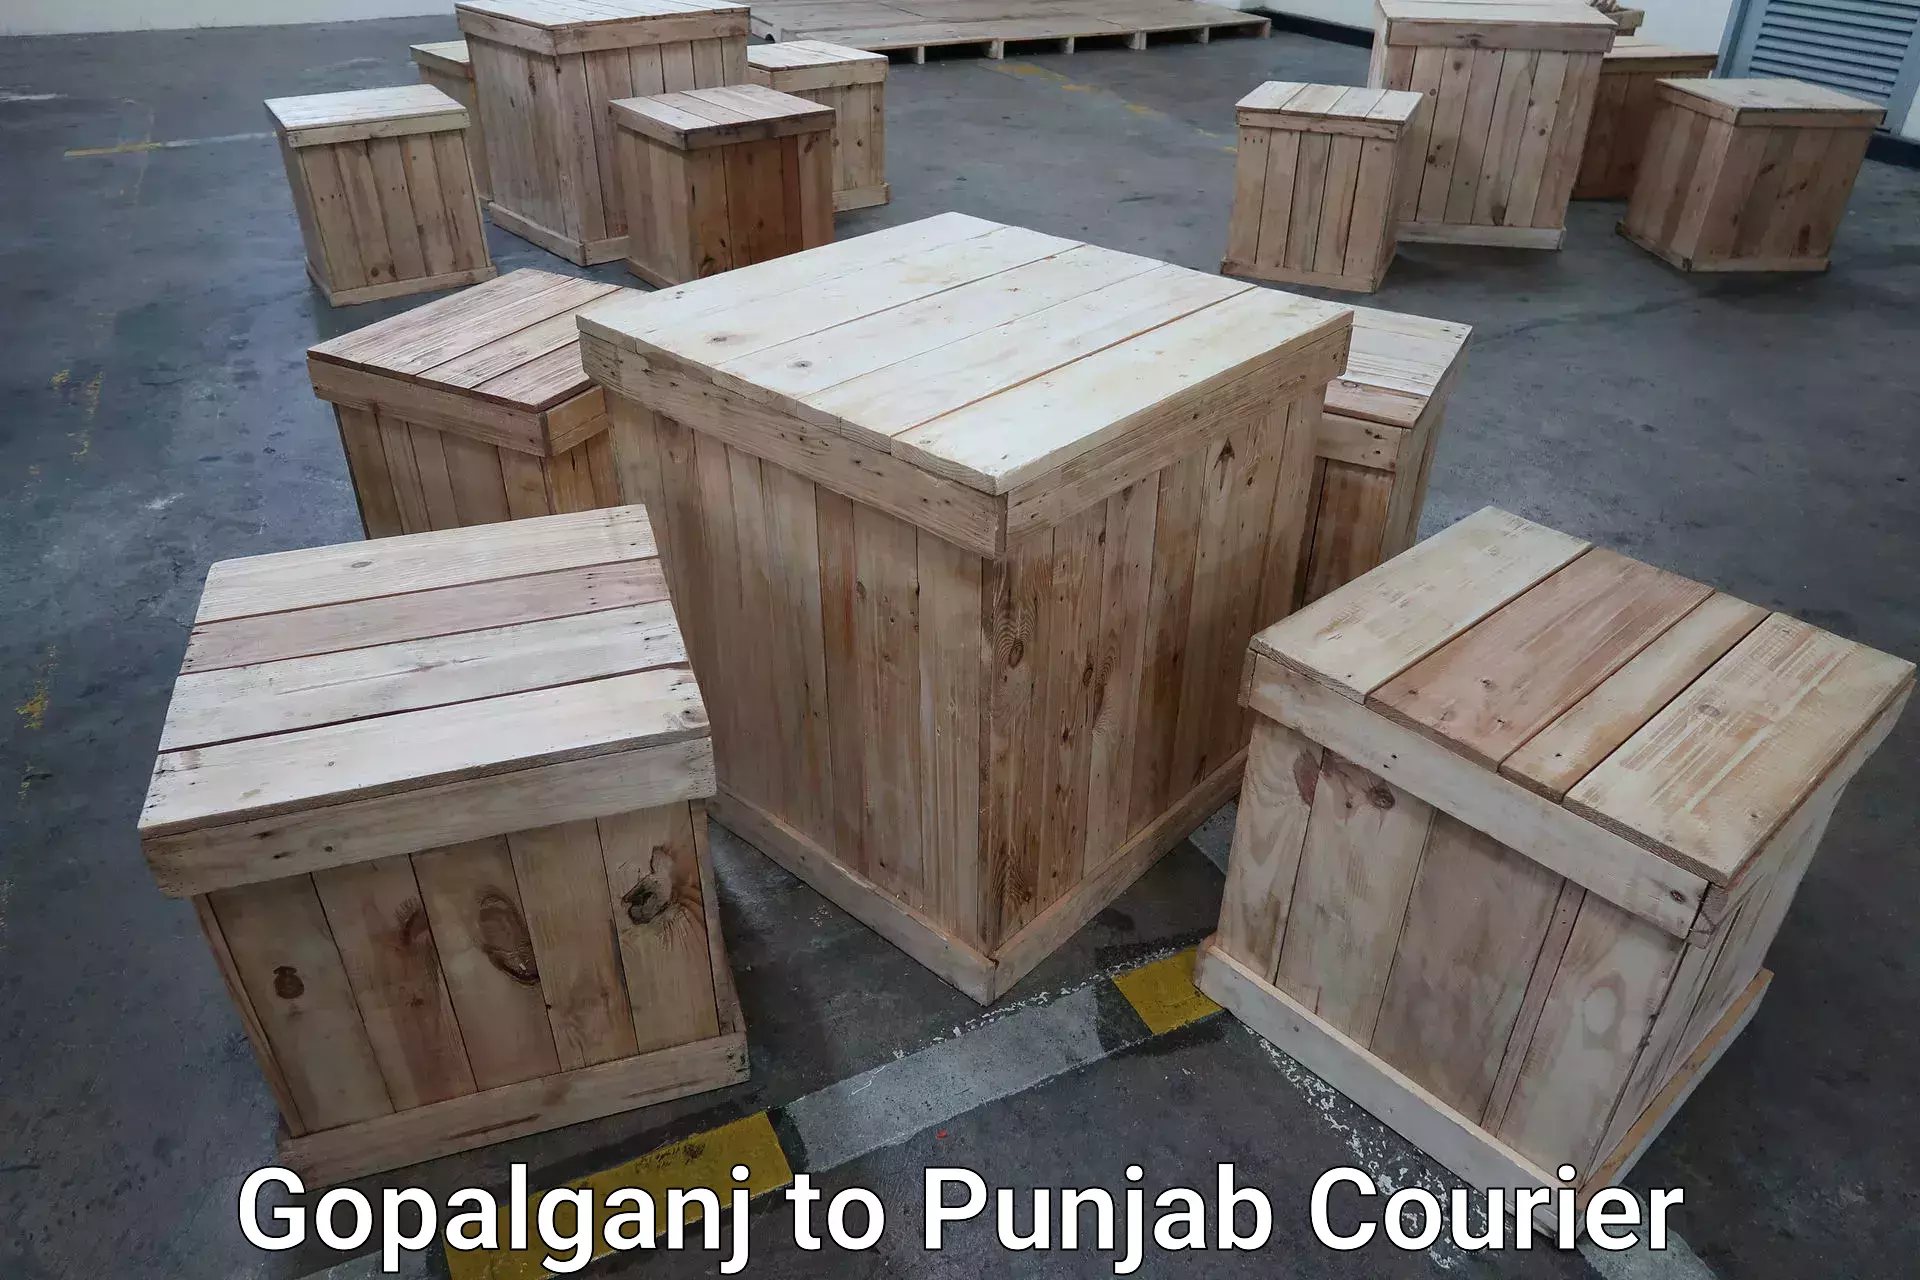 Luggage delivery optimization Gopalganj to Punjab